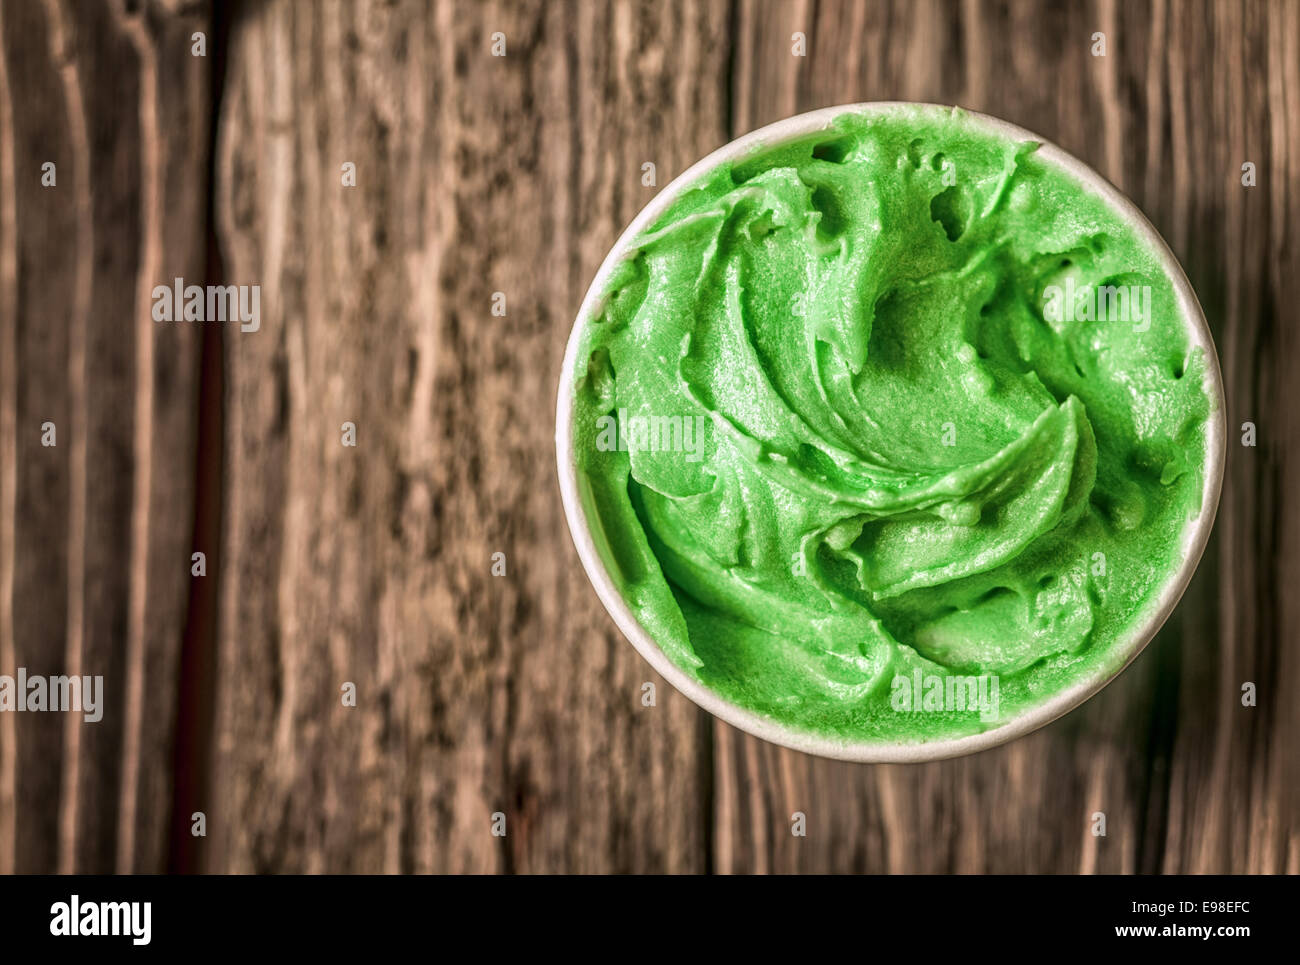 Tina de apetitosos helados italianos verdes para un delicioso bocadillo refrescante en un día de verano sirve en un viejo capaz de madera con copyspace, vista desde arriba Foto de stock